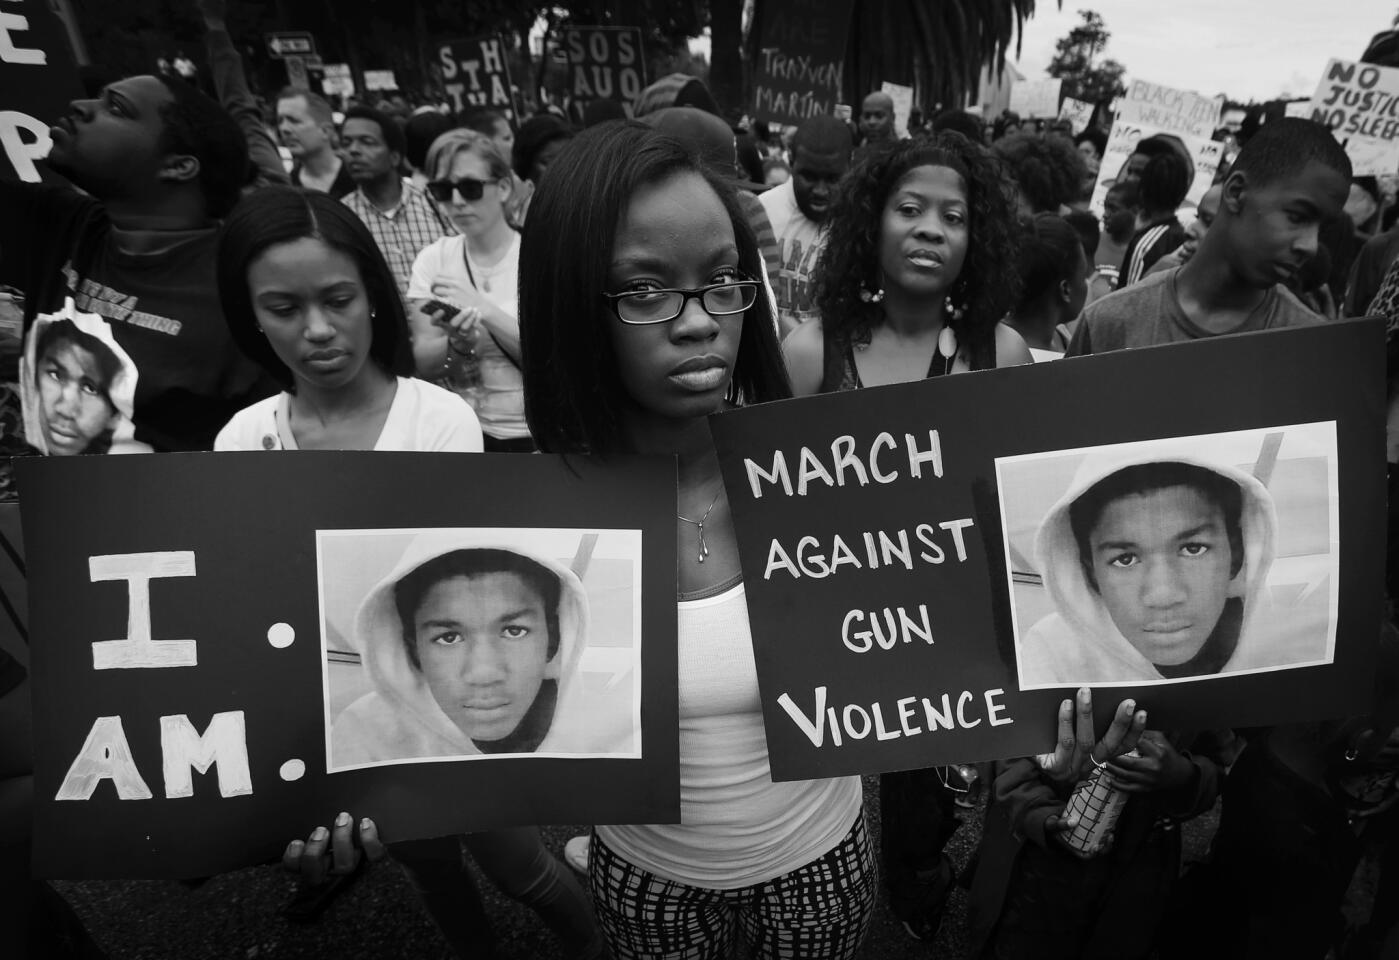 Trayvon Martin story: Sanford, Florida